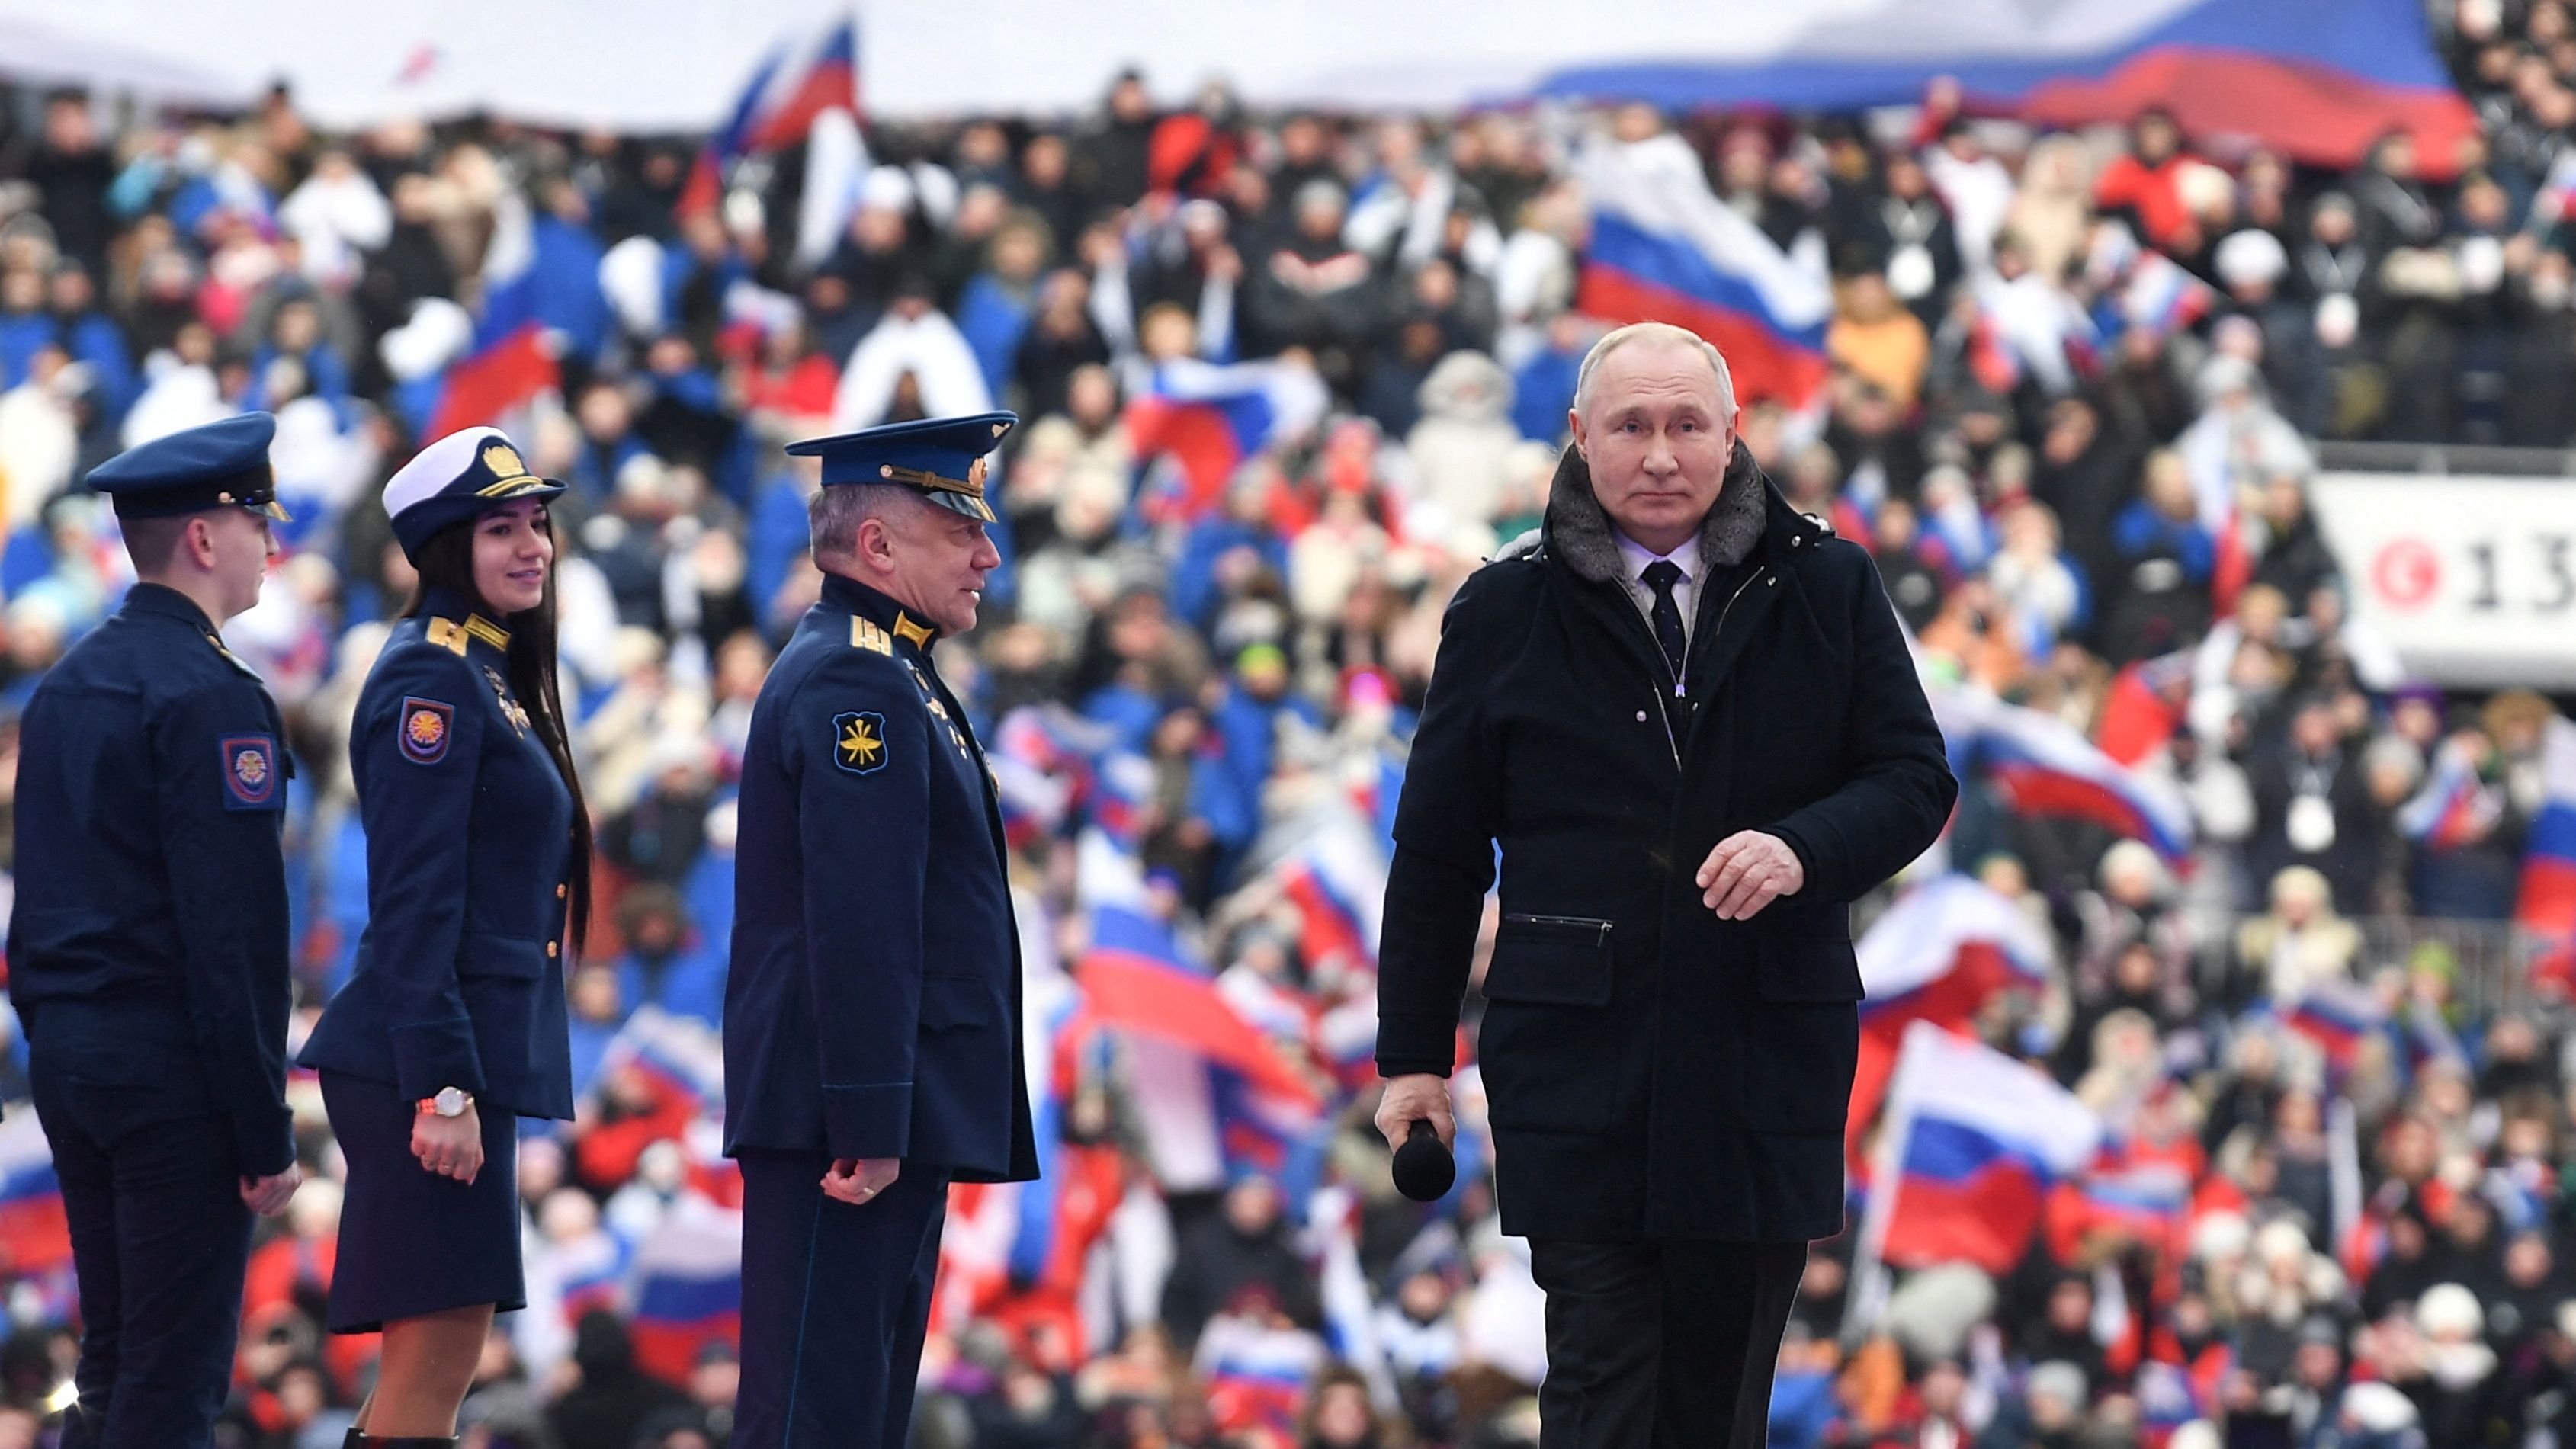 Wladimir Putin vor der tosenden Menge - viele davon sind Berichten zufolge bezahlte Statisten.